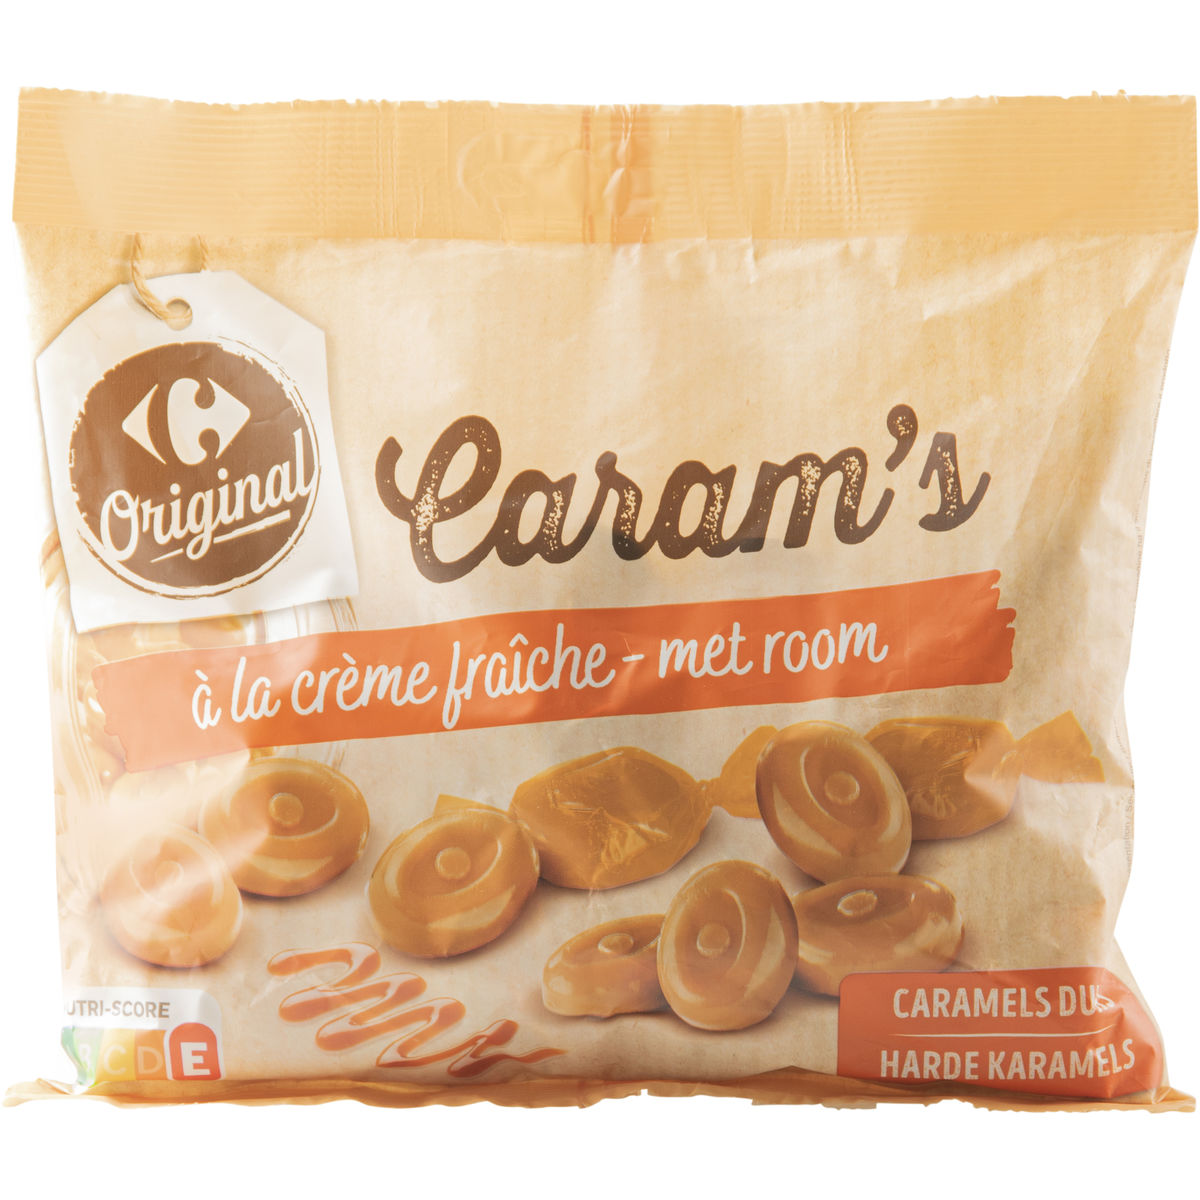 Carrefour Caram's Harde Karamellen met Verse Room 200 g